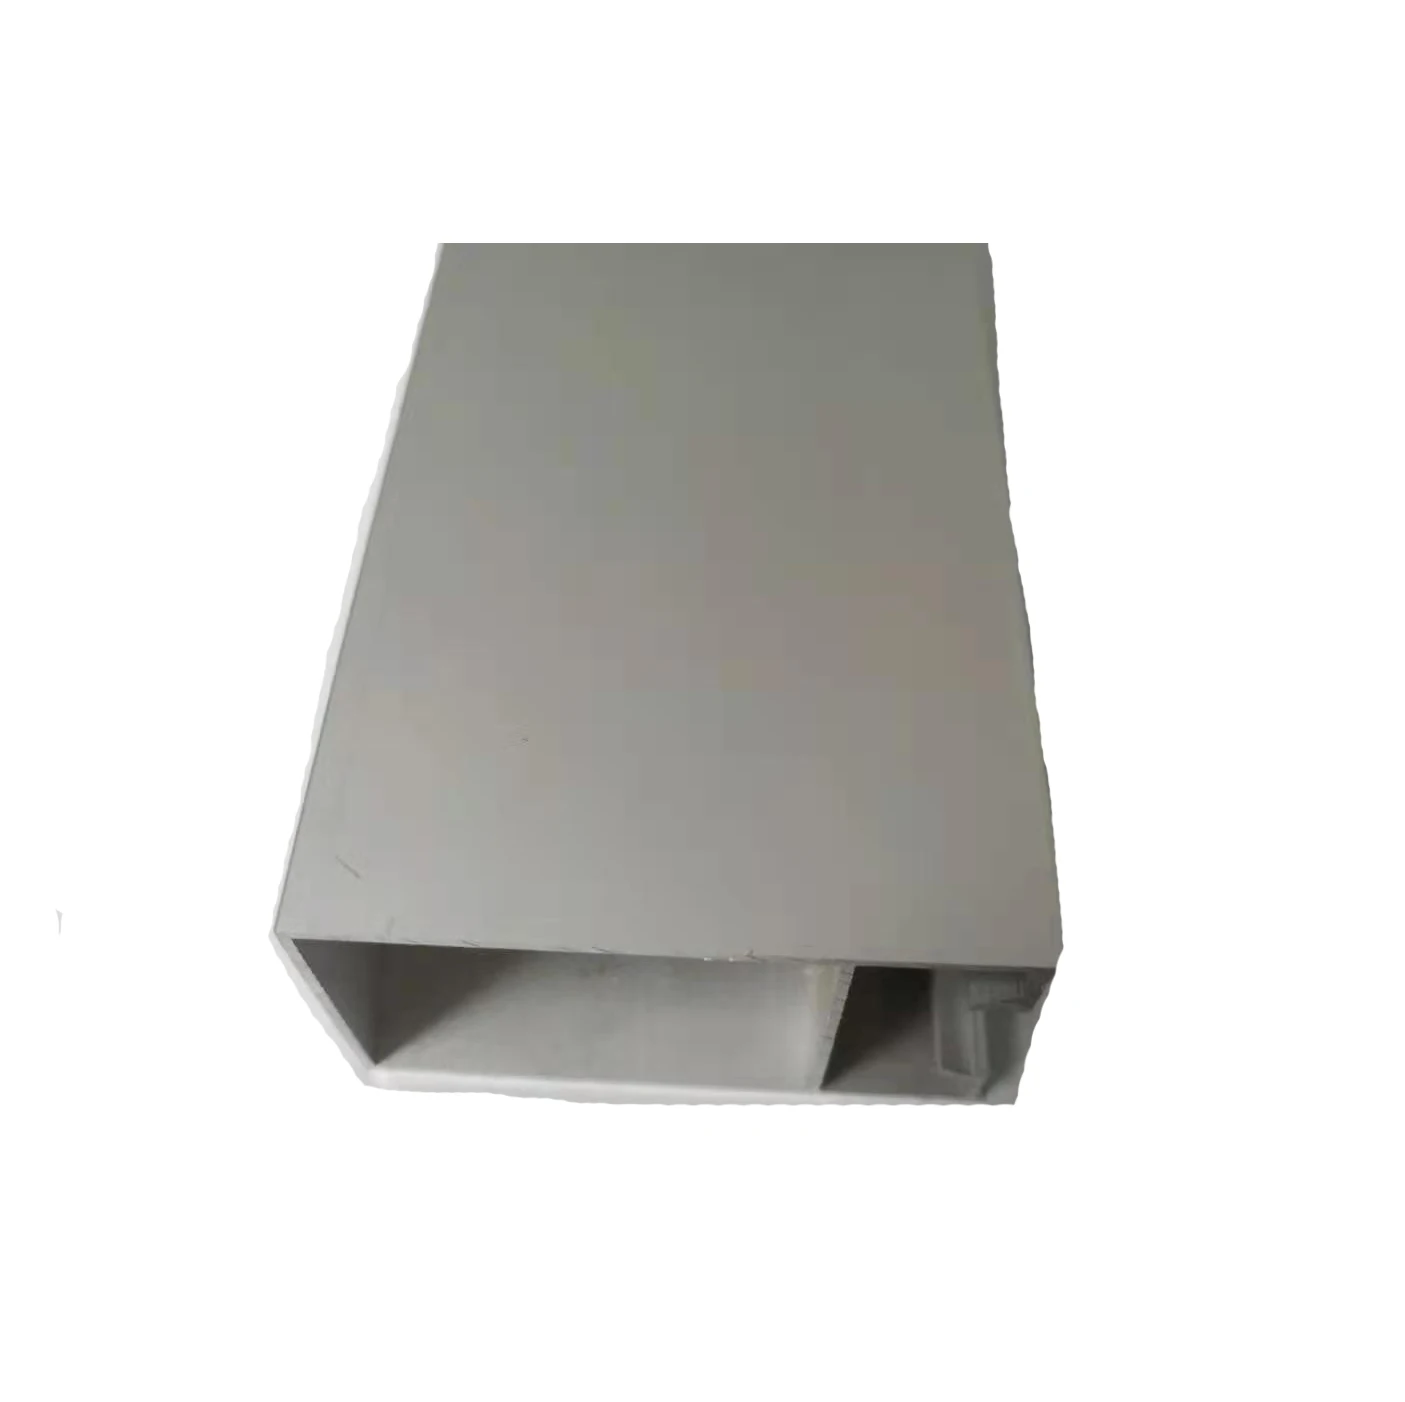 La protuberancia de aluminio anodizada que pule con chorro de arena de plata conveniente del área de Suramérica perfila la aleación 6063 T5